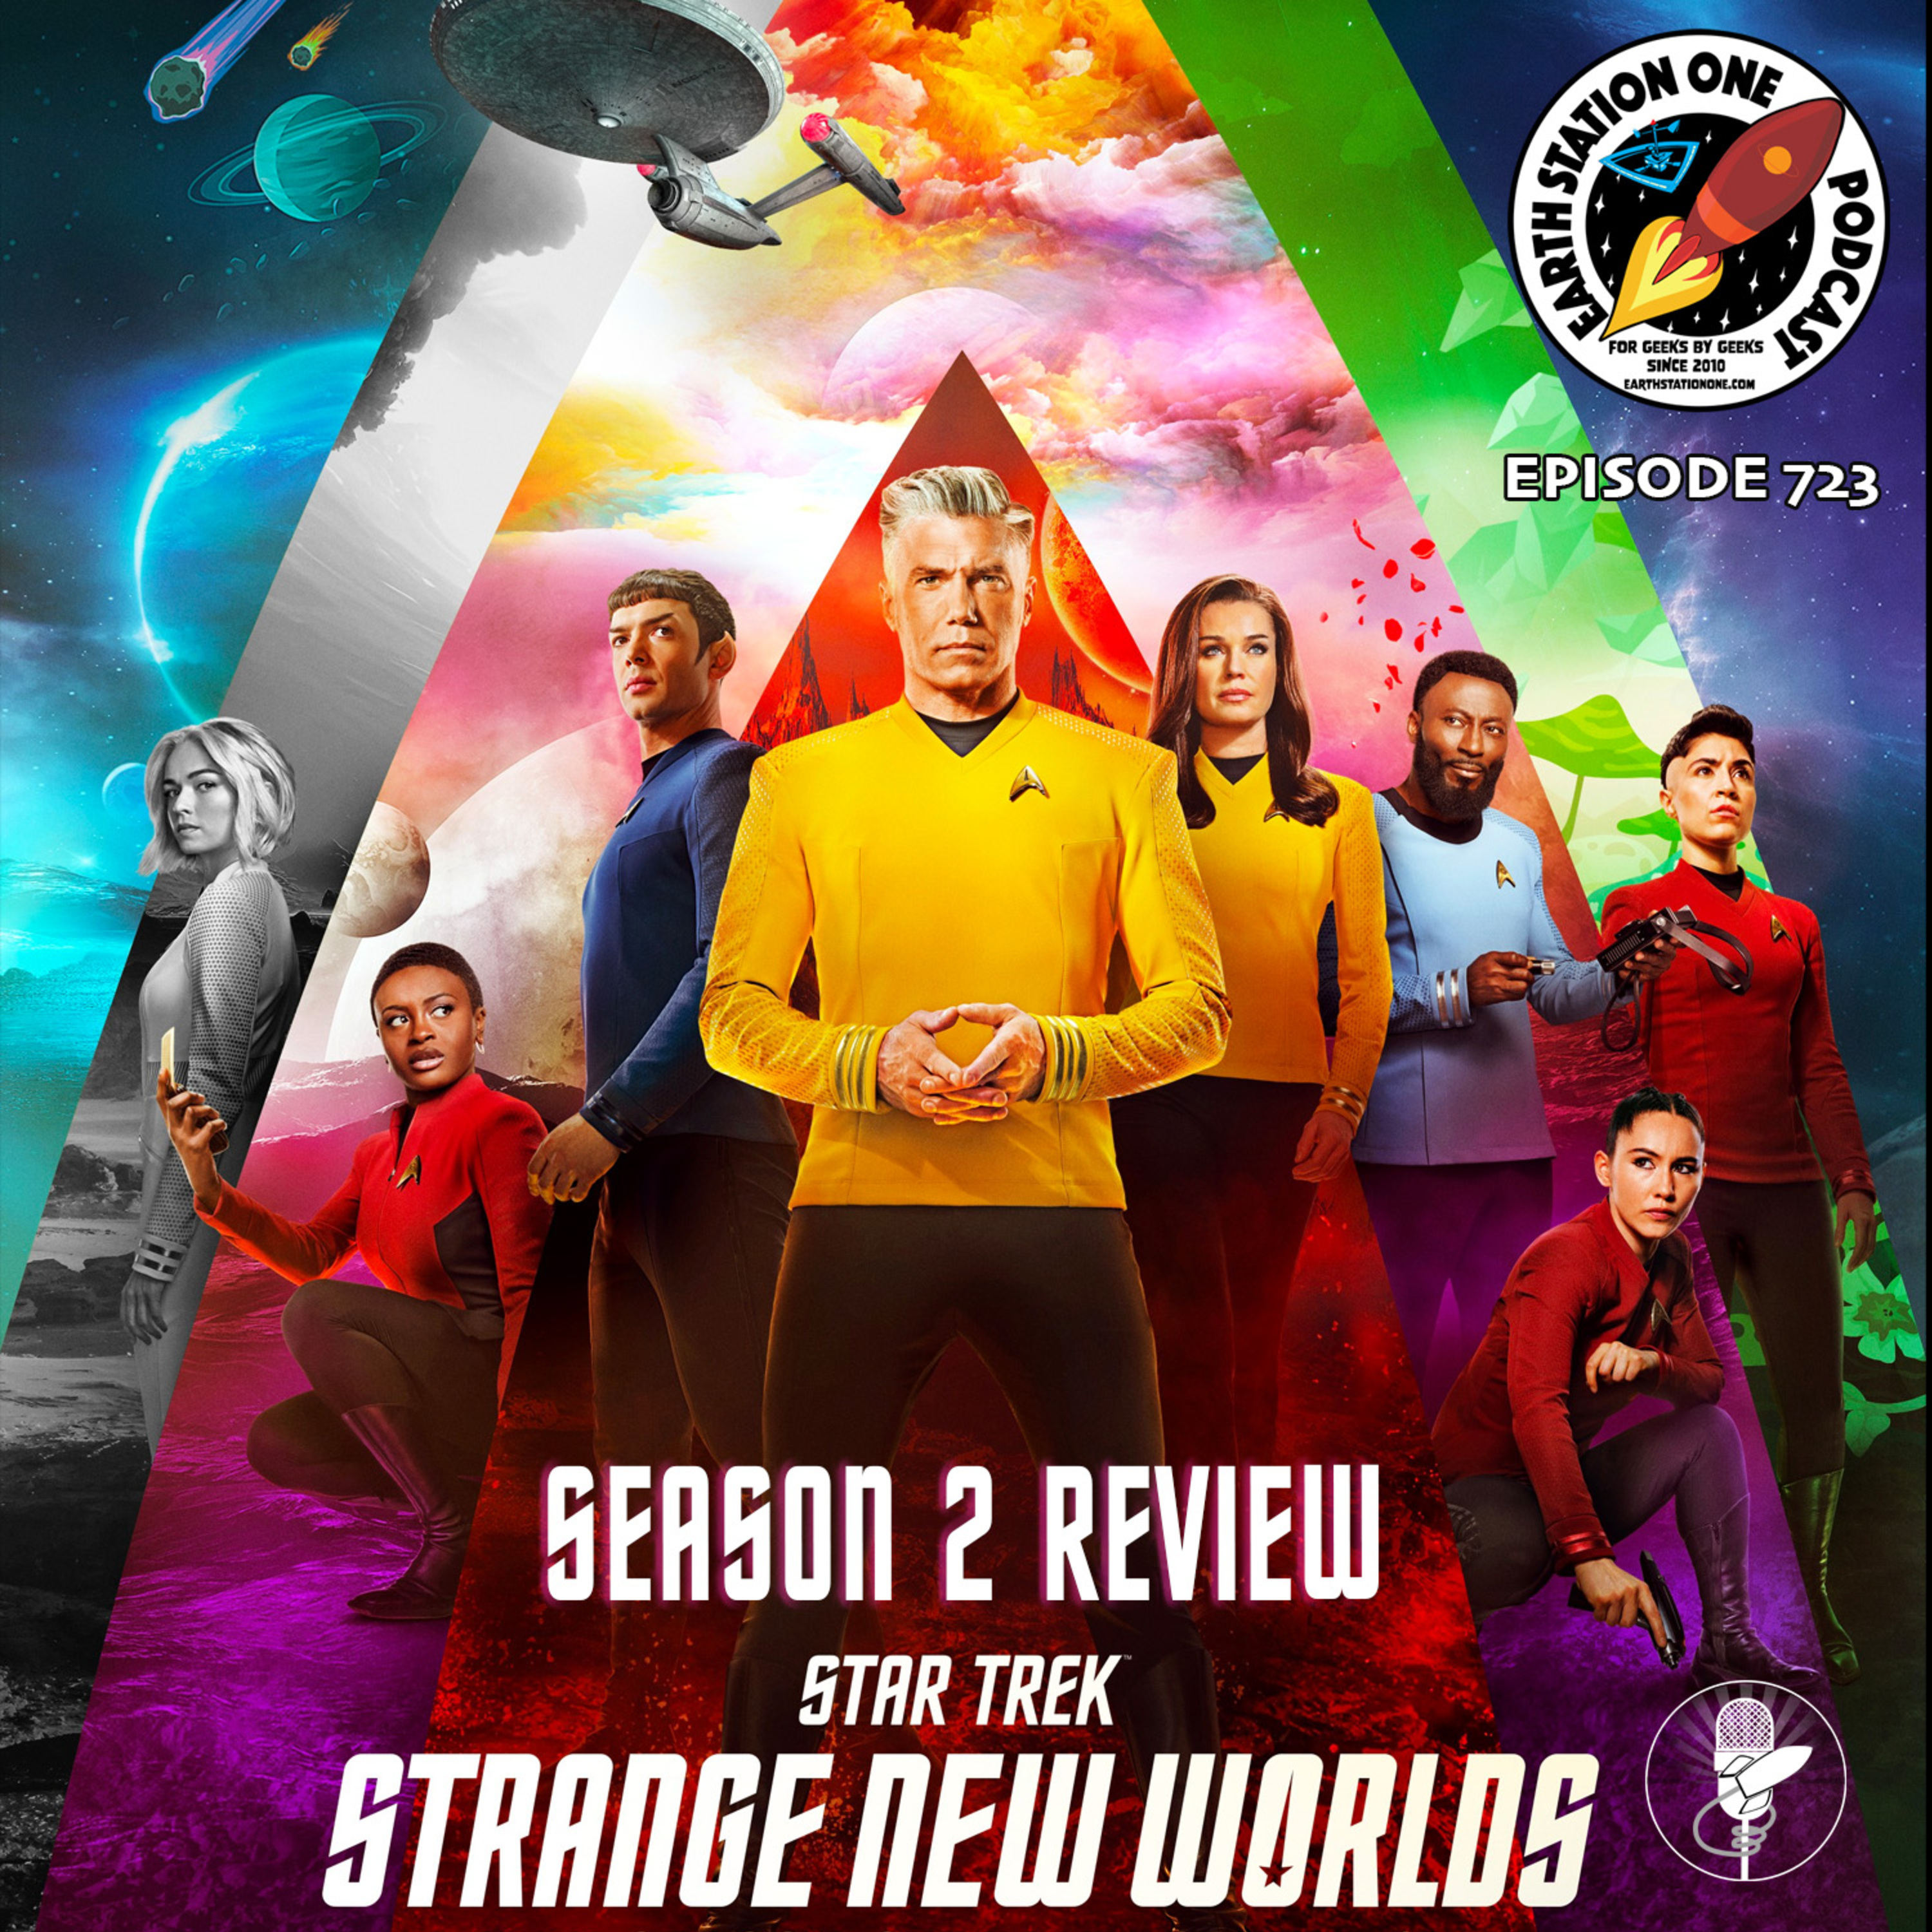 Star Trek: Strange New Worlds Season 2 Review